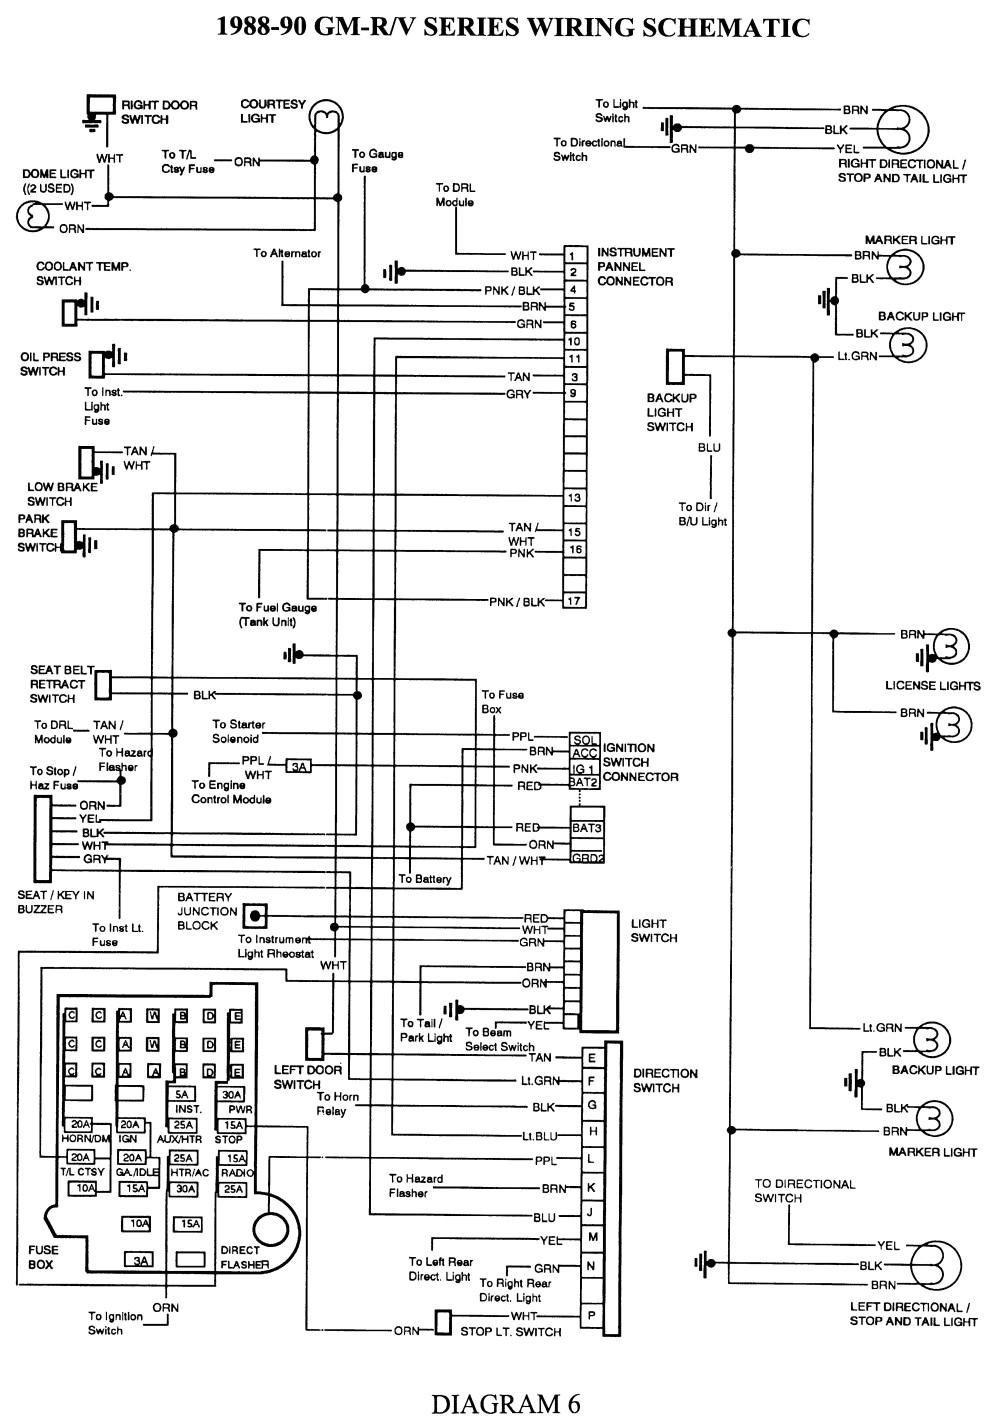 2001 chevy silverado wiring schematic wiring diagram view 01 chevy silverado wiring diagram 01 chevy silverado wiring diagram